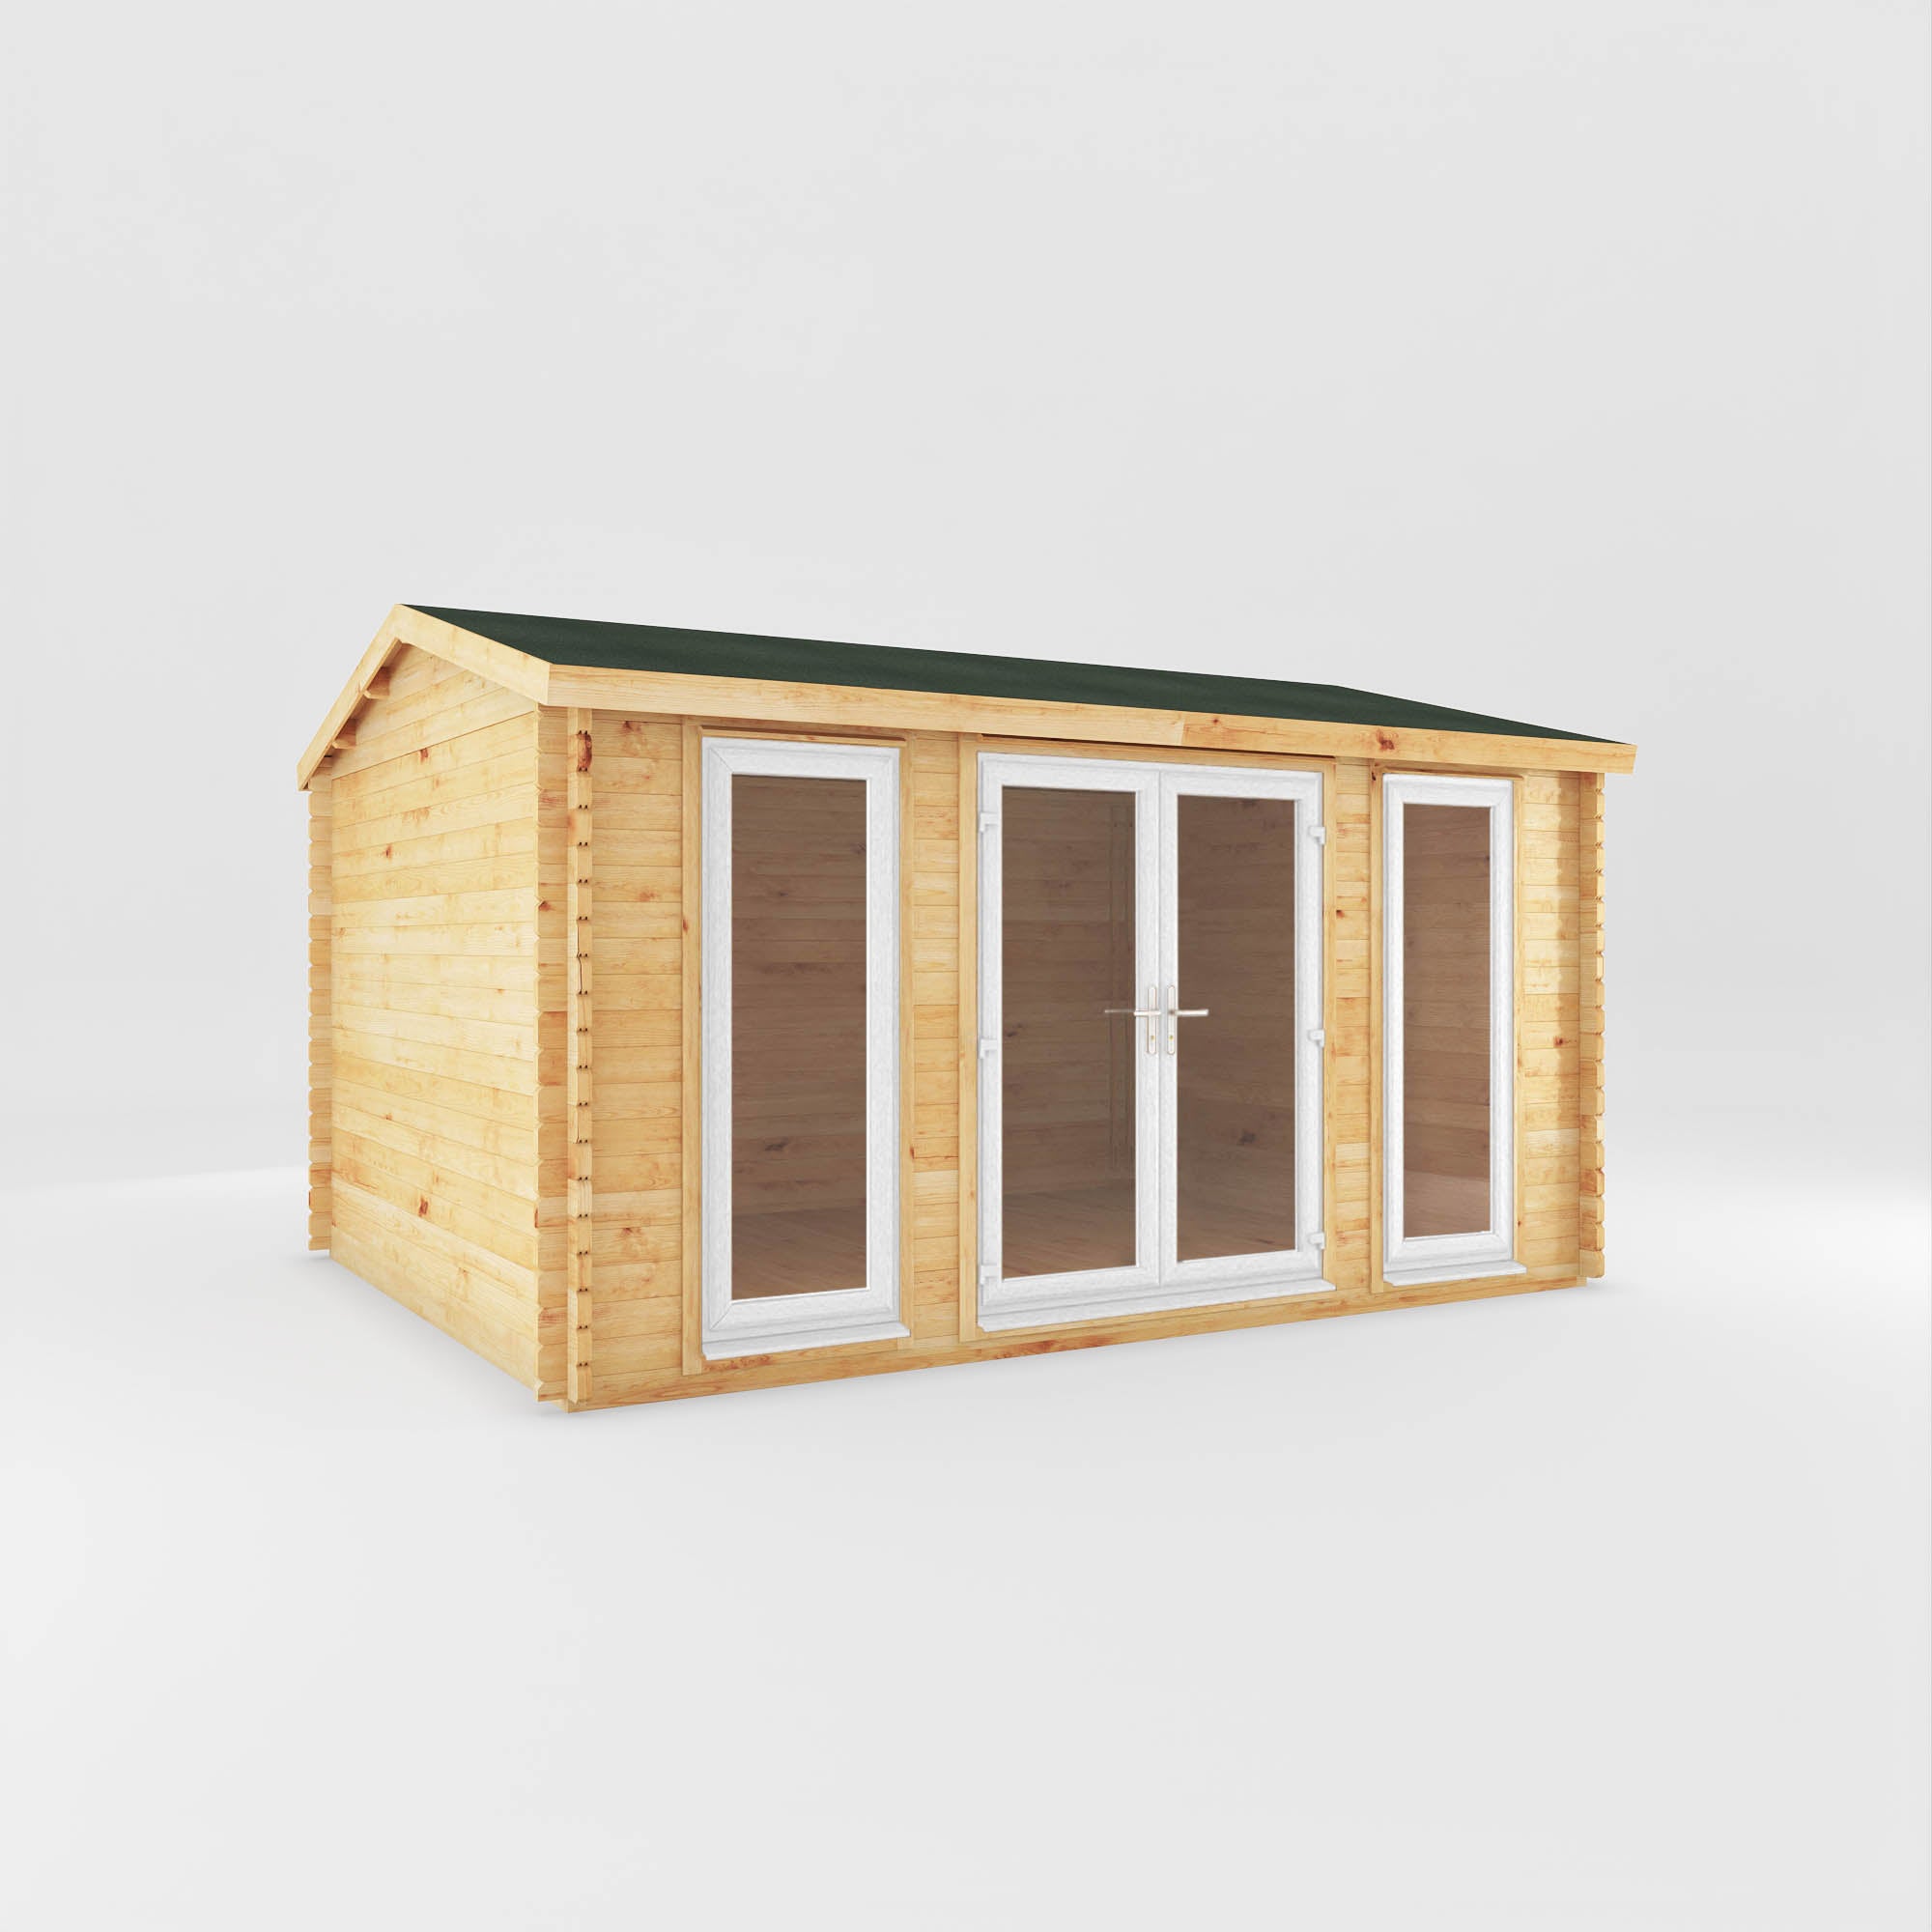 4.5m x 3.5m Home Office Studio Log Cabin - UPVC White